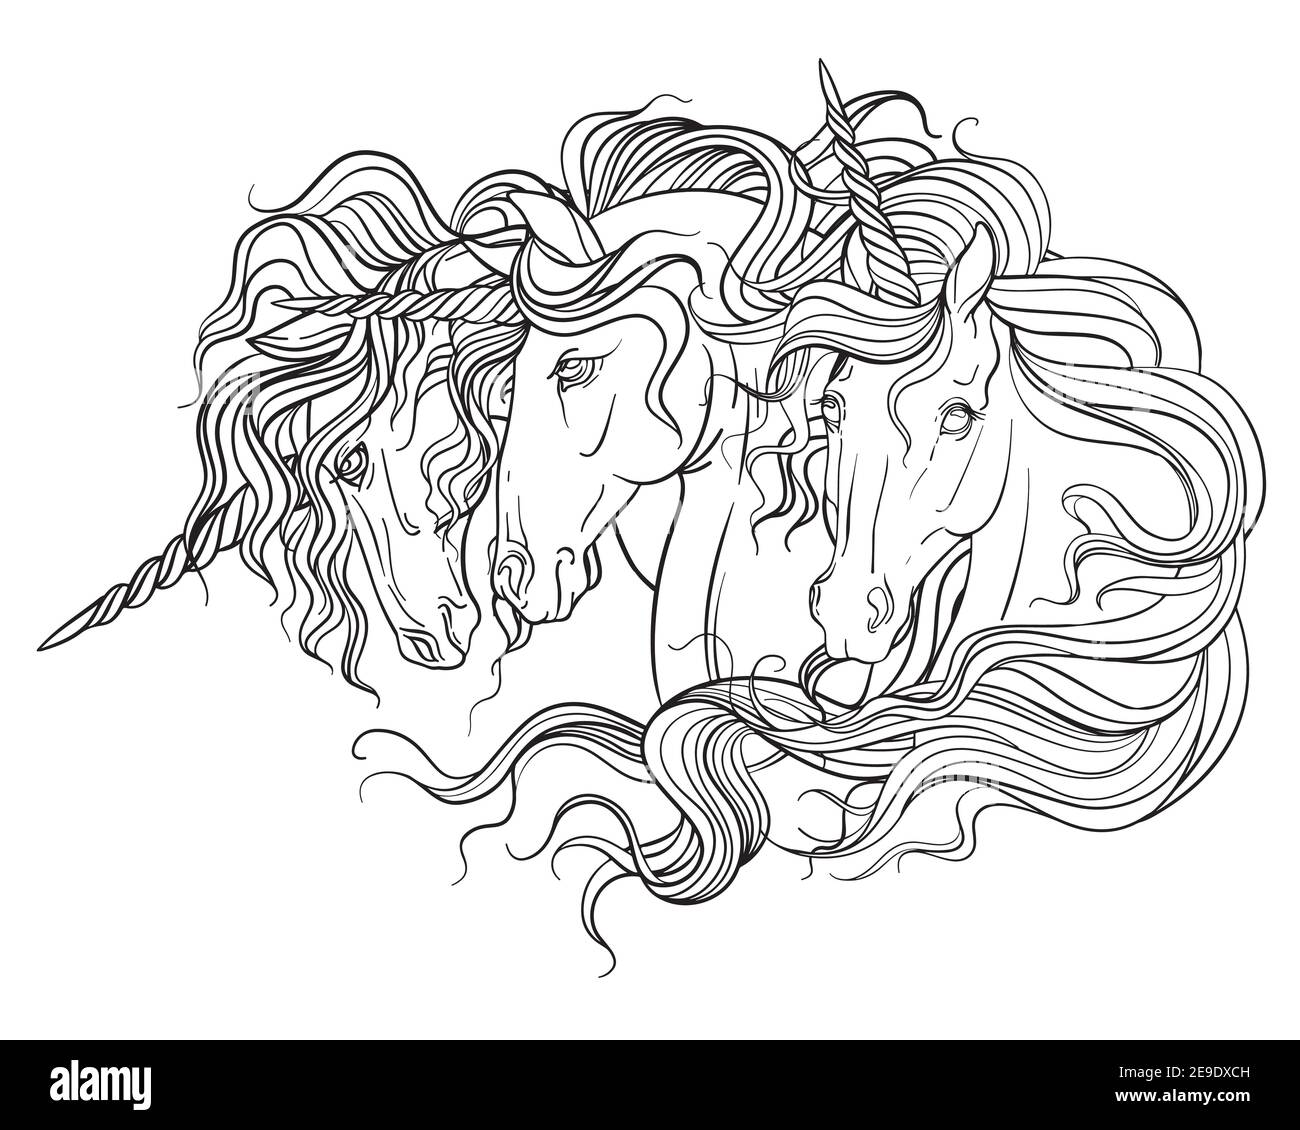 Portraits de trois licornes avec une longue calaque. Illustration de contour noir et blanc vectoriel pour la page de coloriage. Pour la conception d'imprimés, d'affiches, de posters Illustration de Vecteur